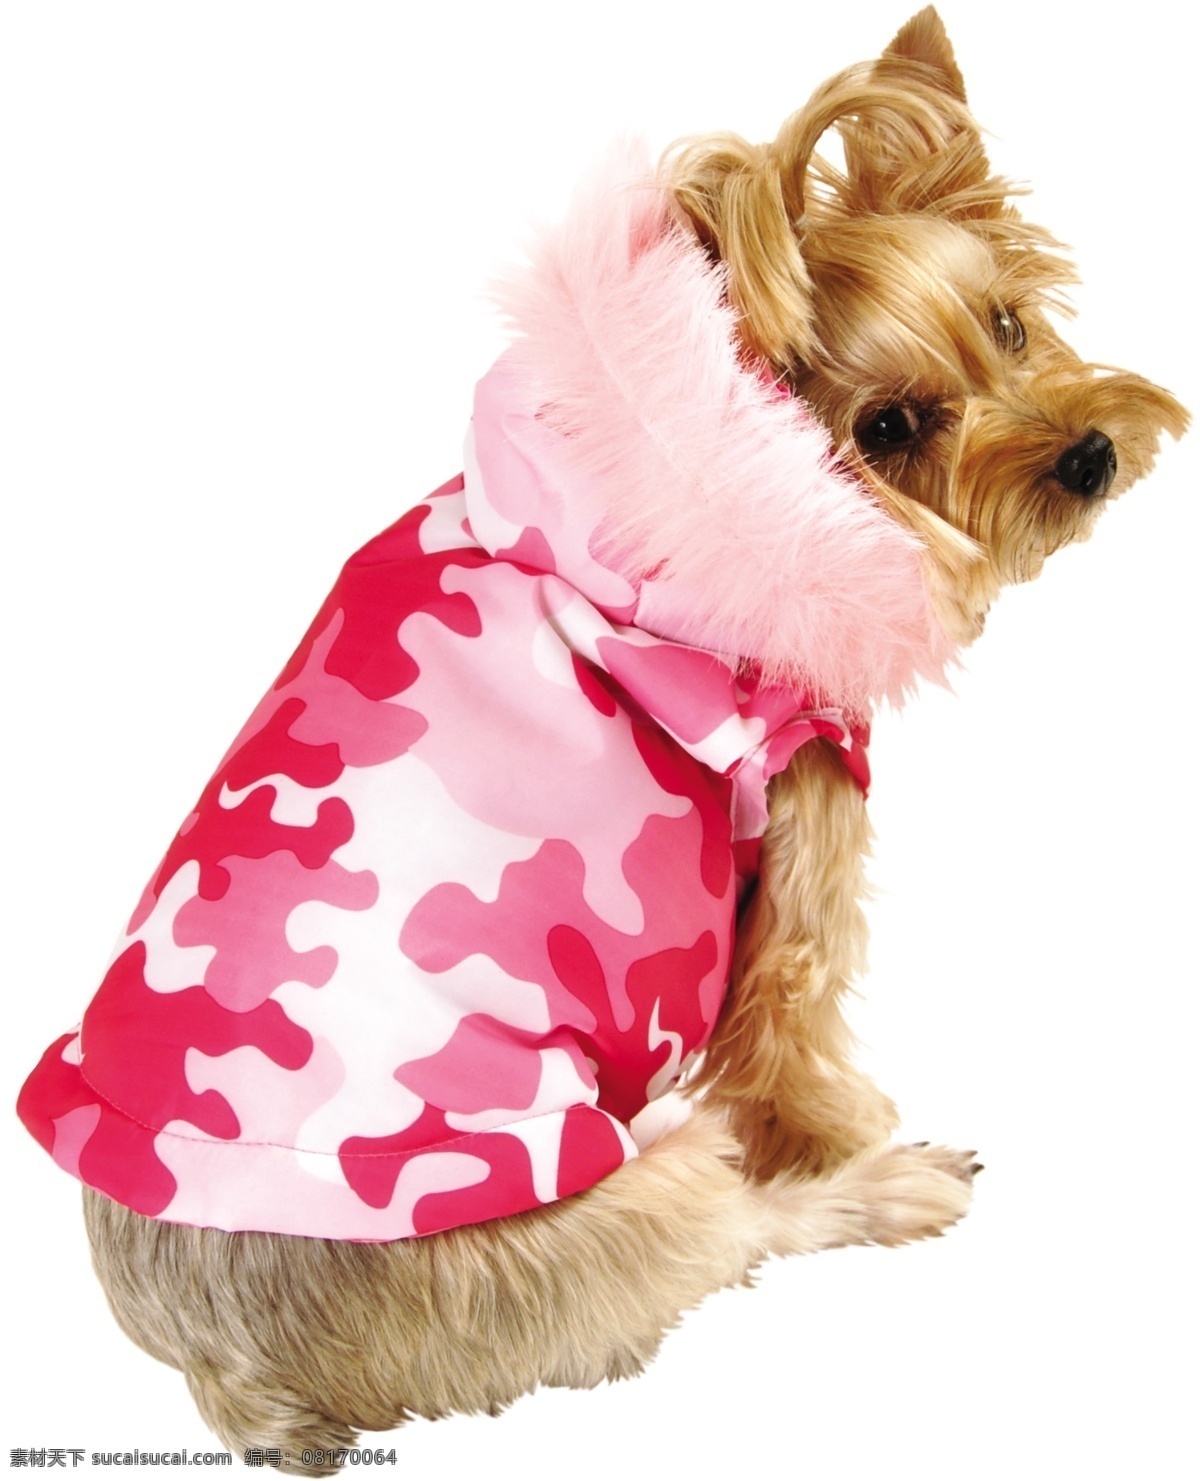 粉红色 拼 图带 羽毛 帽子 夹克 小狗 穿衣服的小狗 宠物狗 动物 小狗的图片 犬类图片 狗衣服 狗着装 生物世界 家禽家畜 可爱 居家 穿 衣服 狗